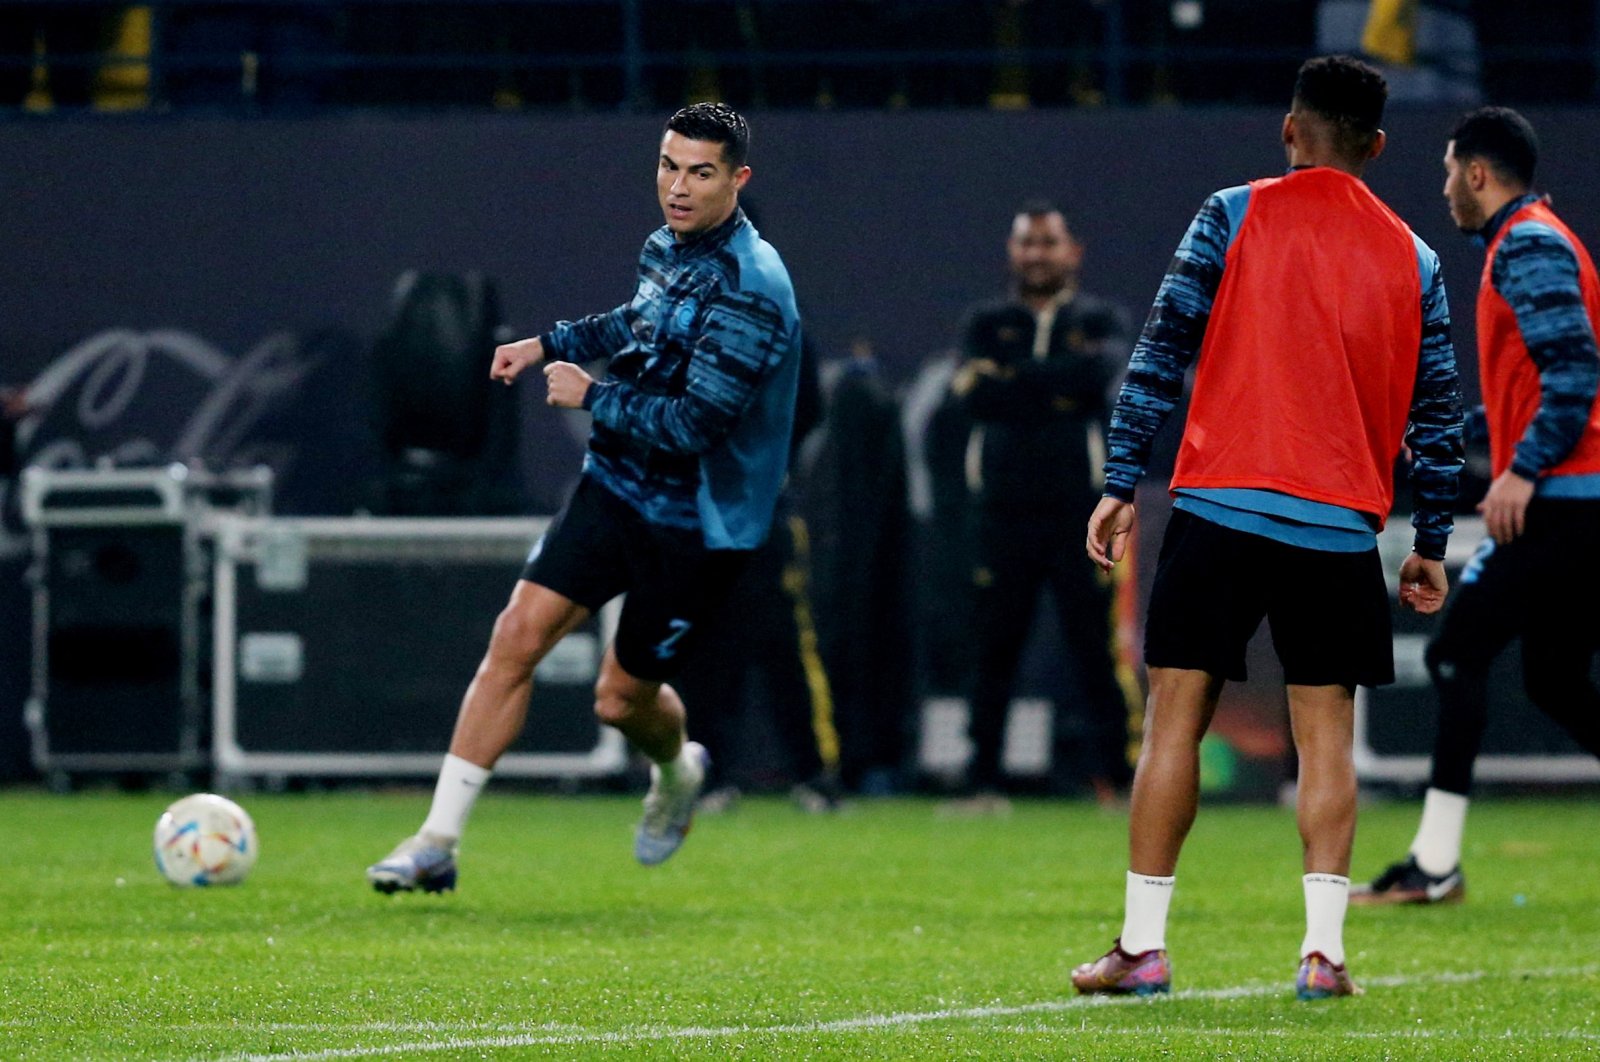 Pertunjukan debut Ronaldo di Al-Nassr ditunda karena kuota pemain asing